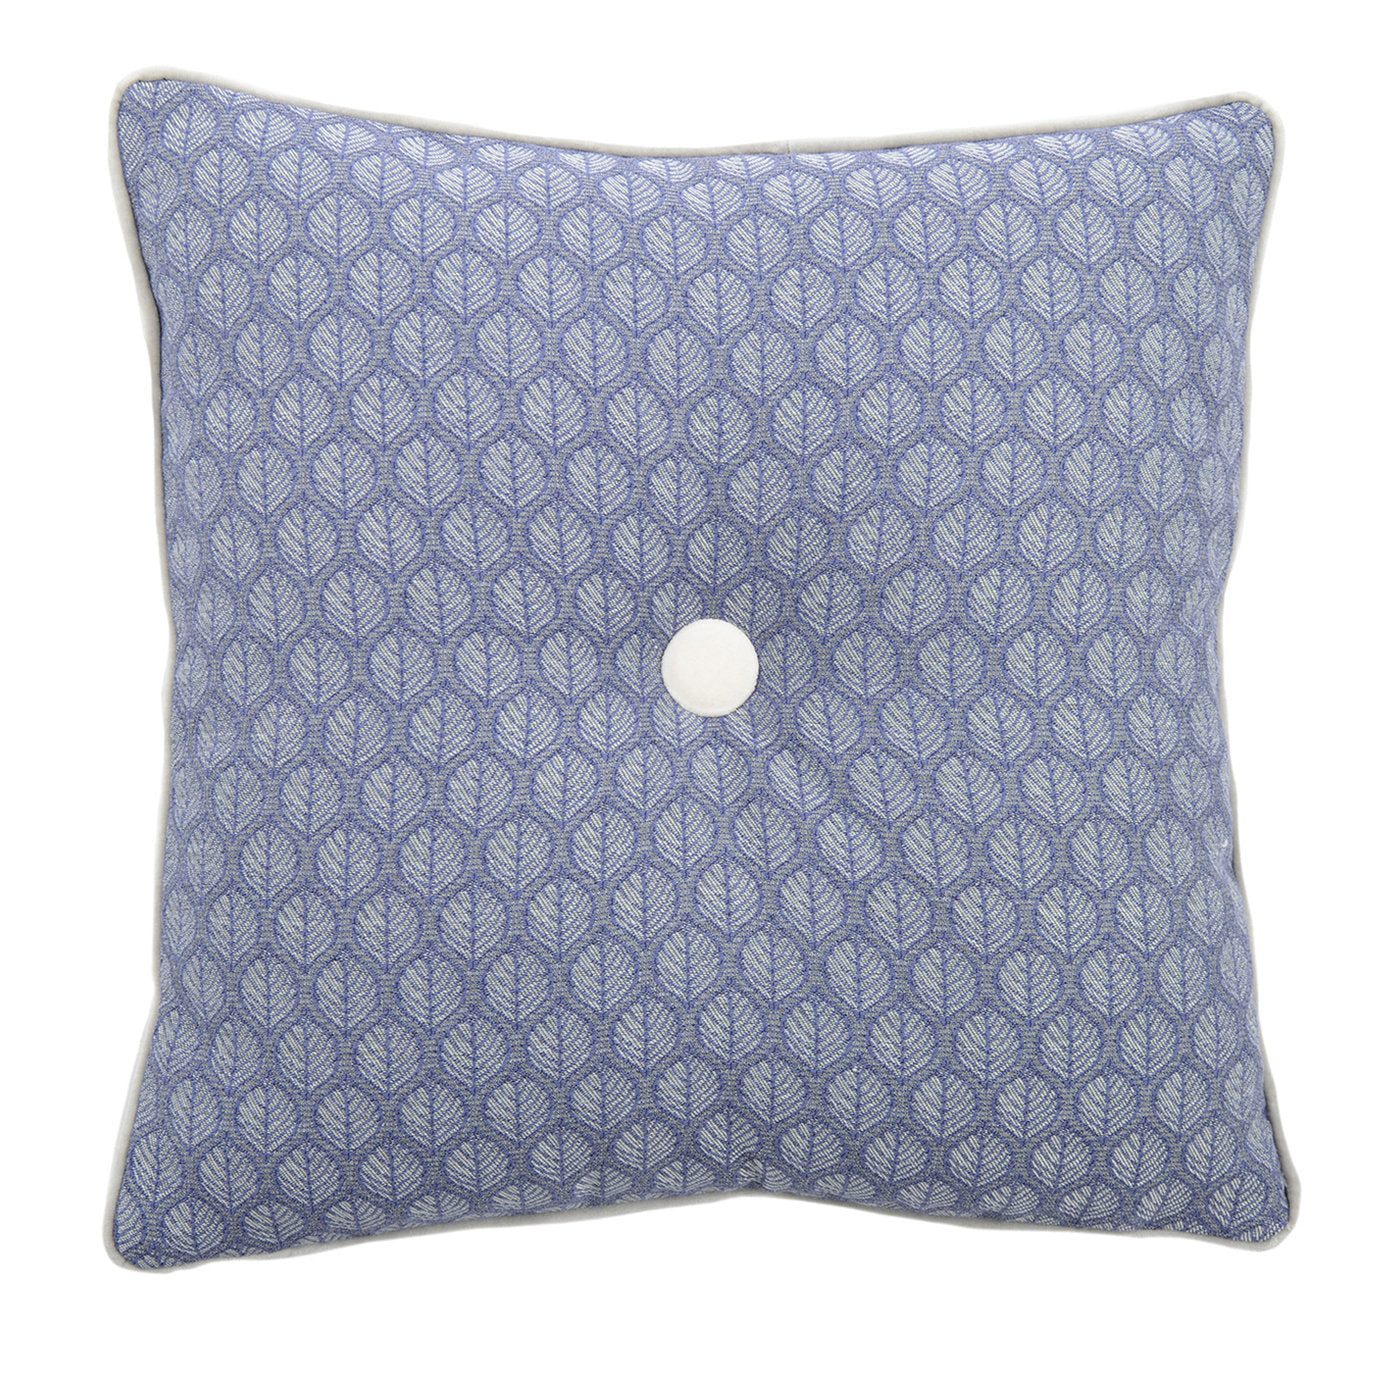 Carrè Cushion in geometric jacquard fabric - Alternative view 3